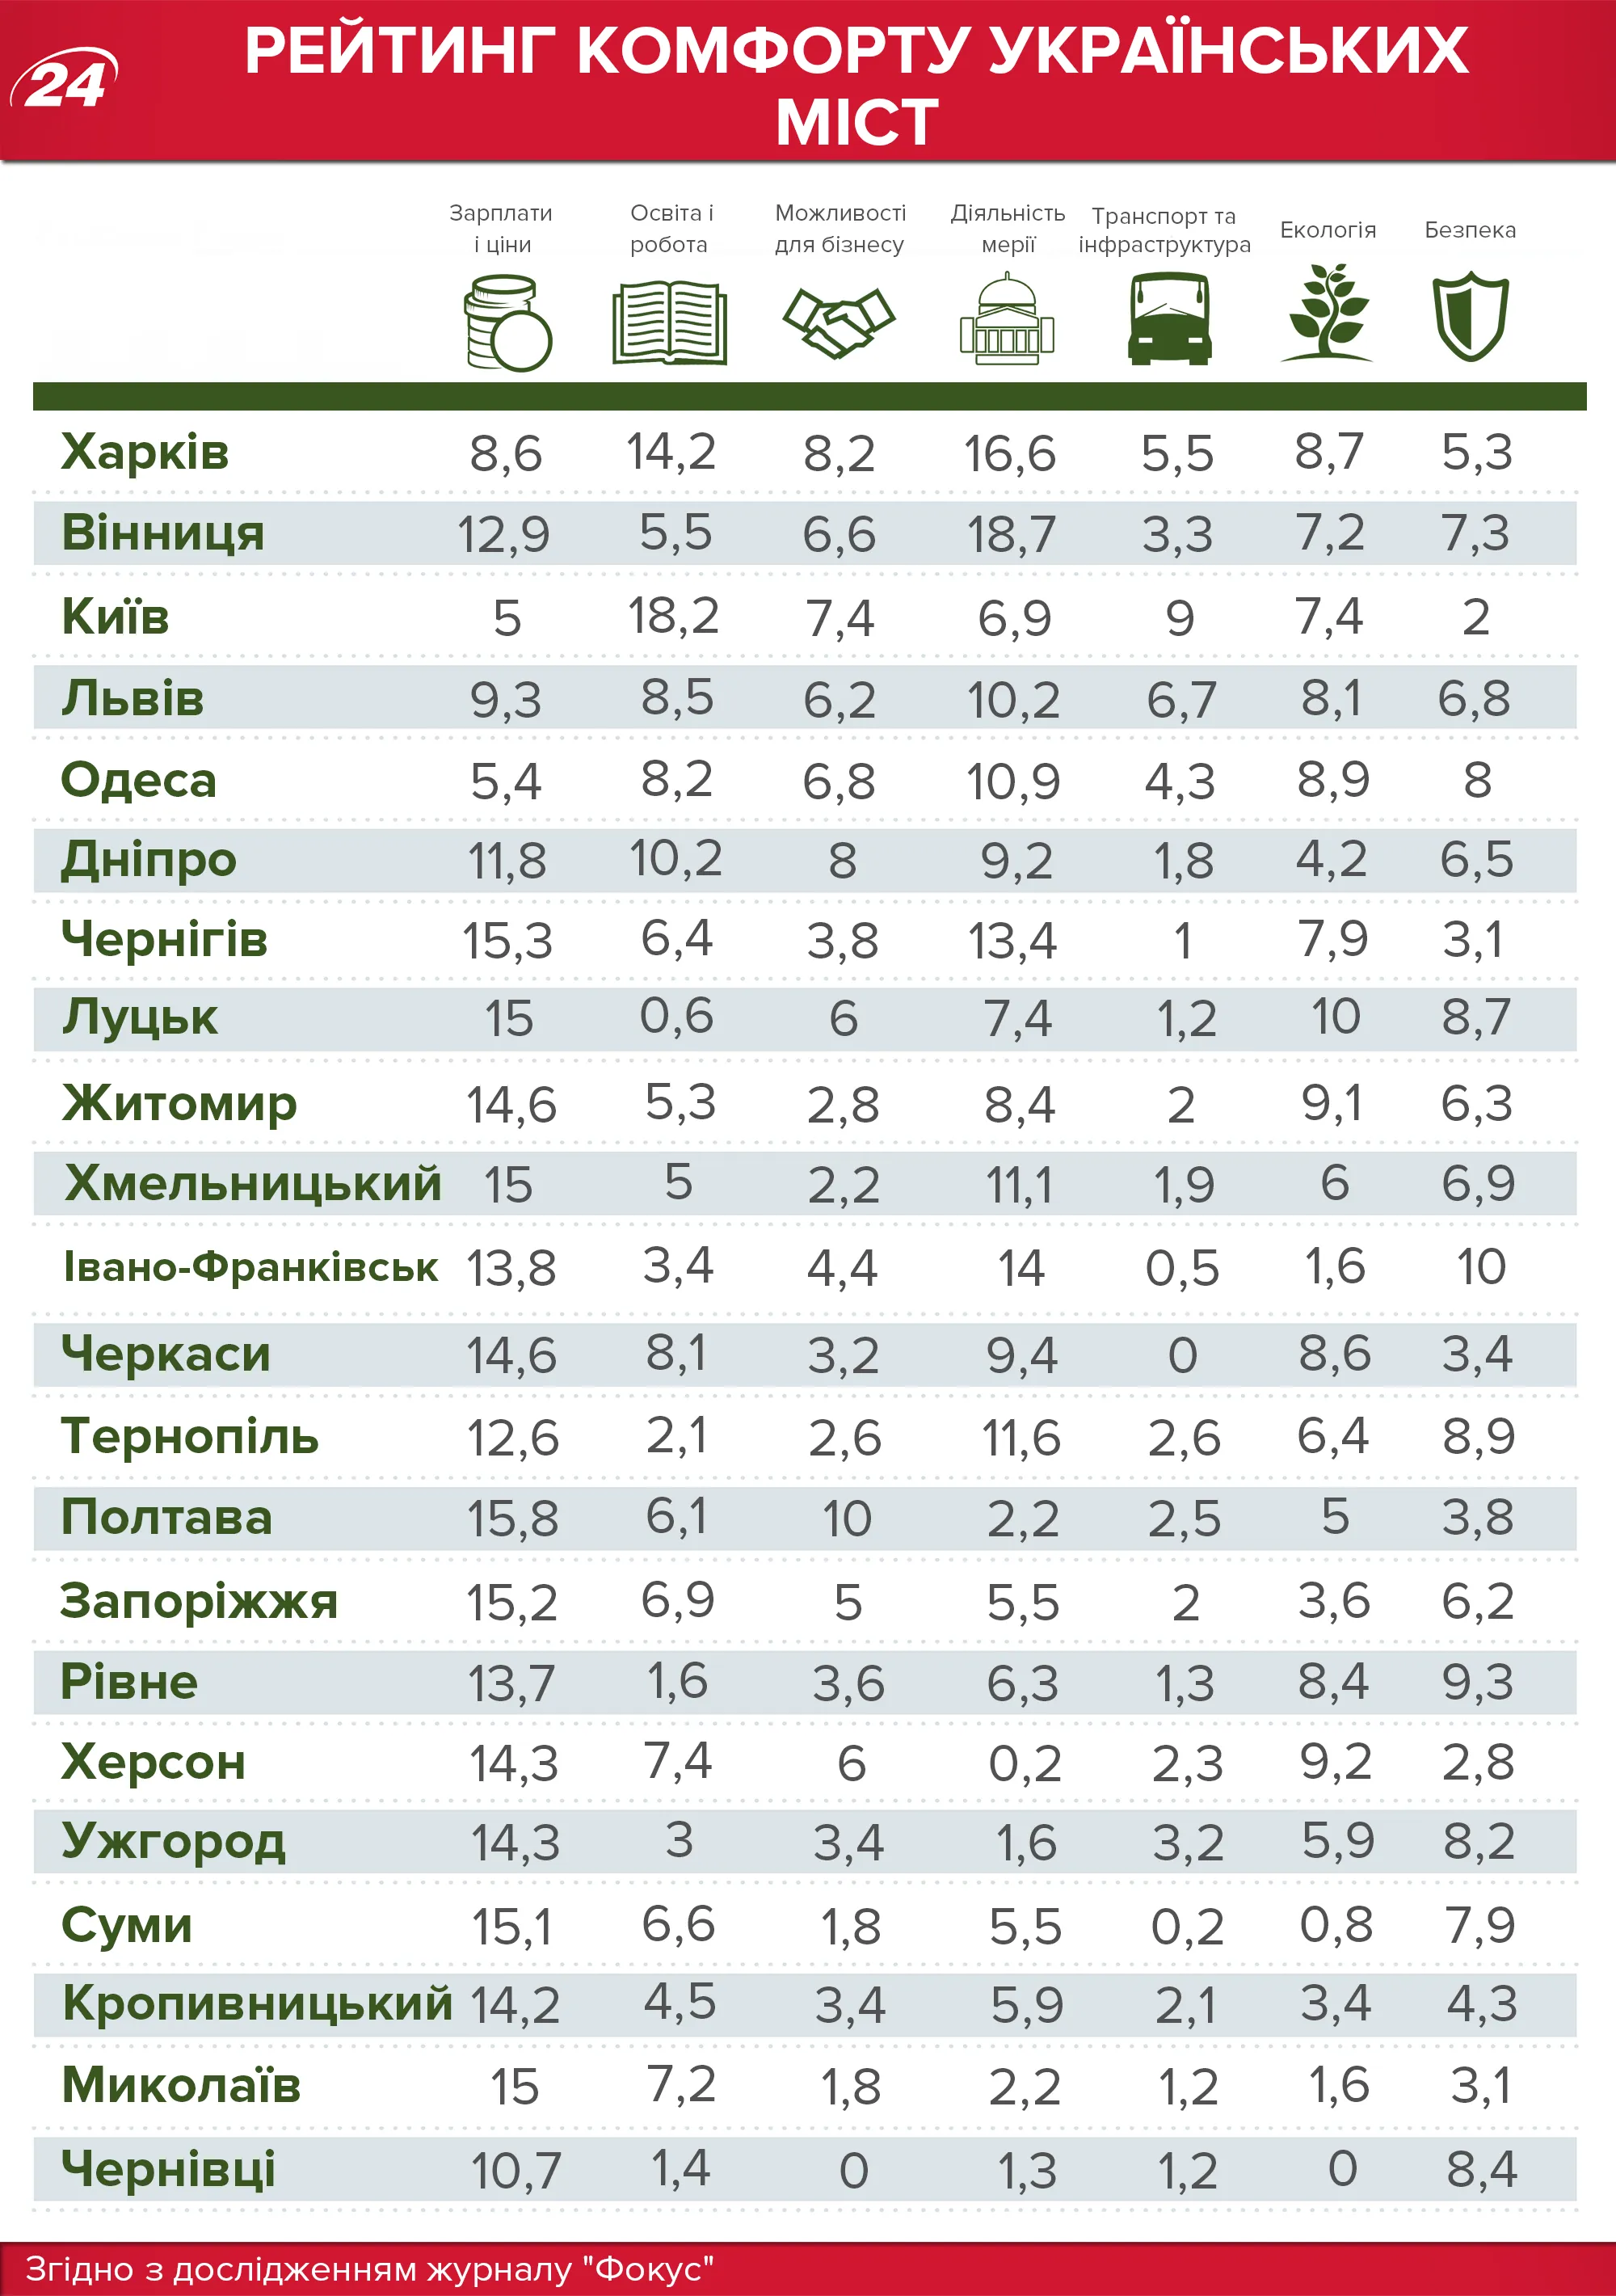 Рейтинг обласних центрів України